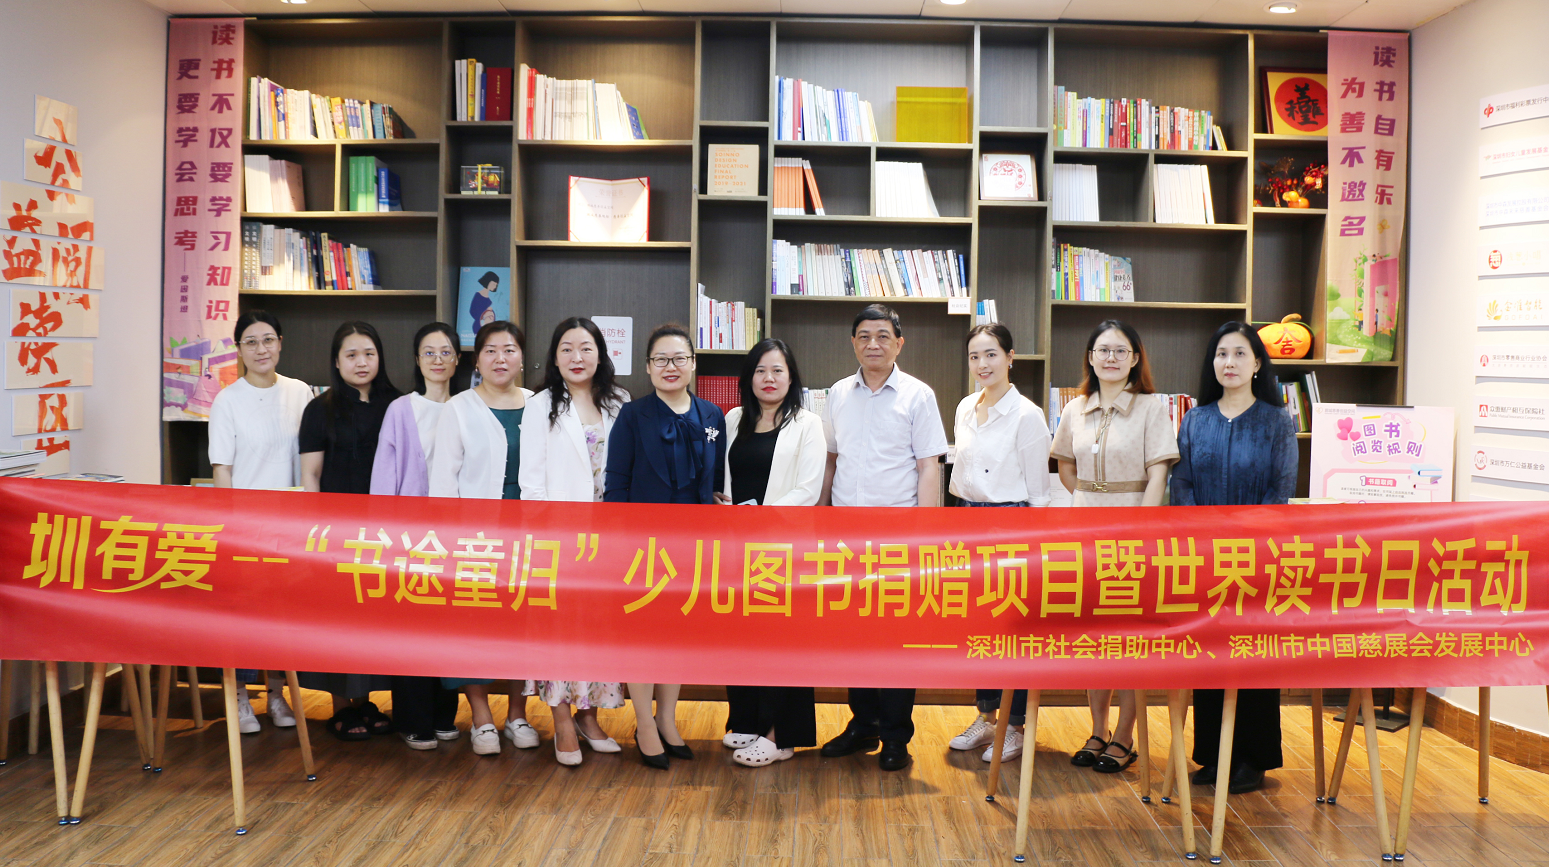 鹏城慈善创益空间公益阅读区正式揭牌